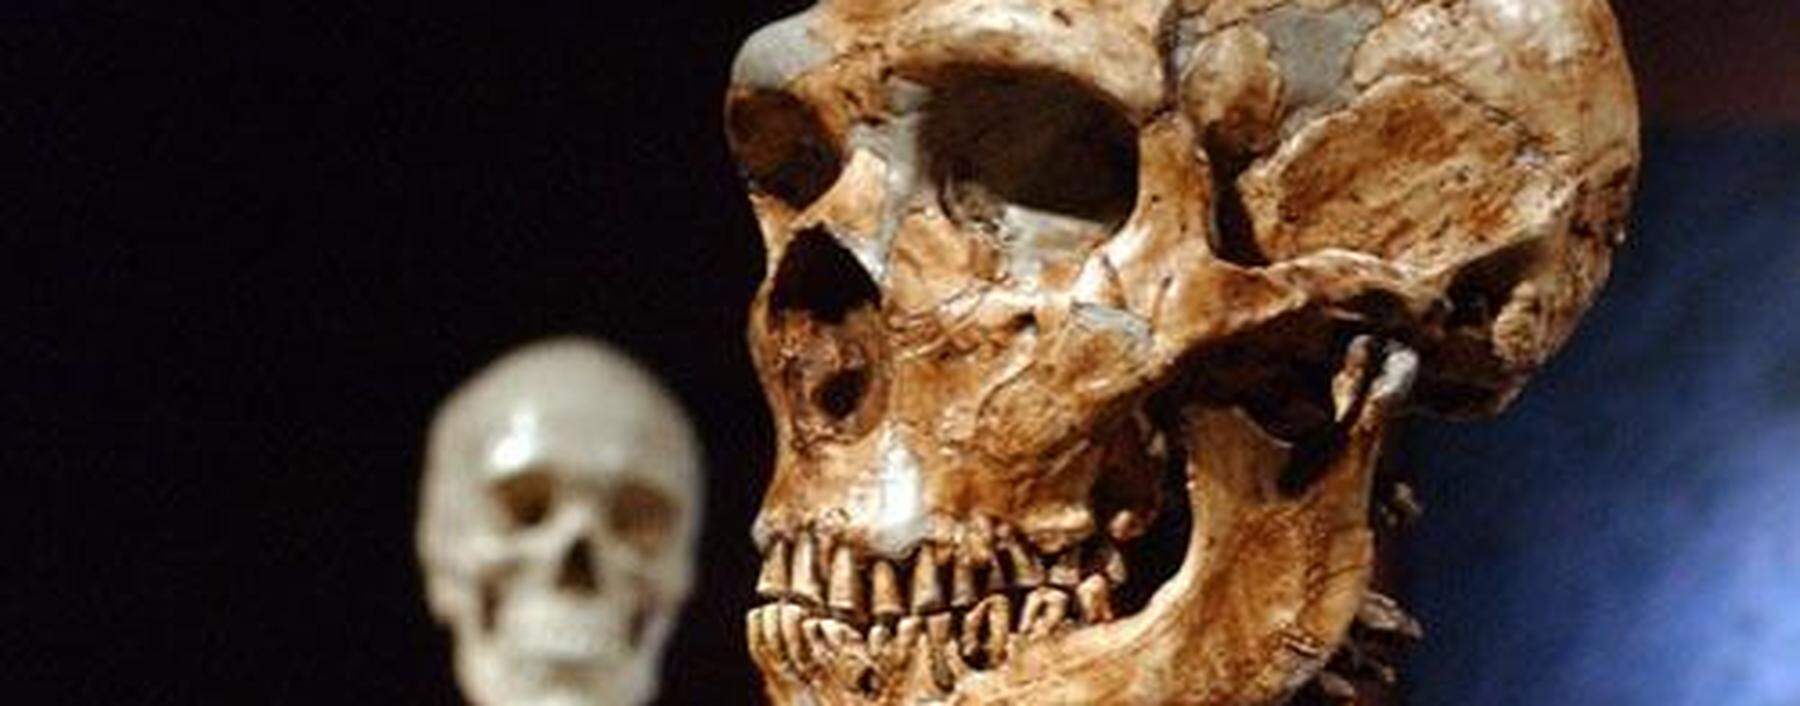 Ein rekonstruiertes Skelett eines Neandertalers, rechts, steht neben dem Skelett eines modernen Menschen im Naturkundemuseum in New York.